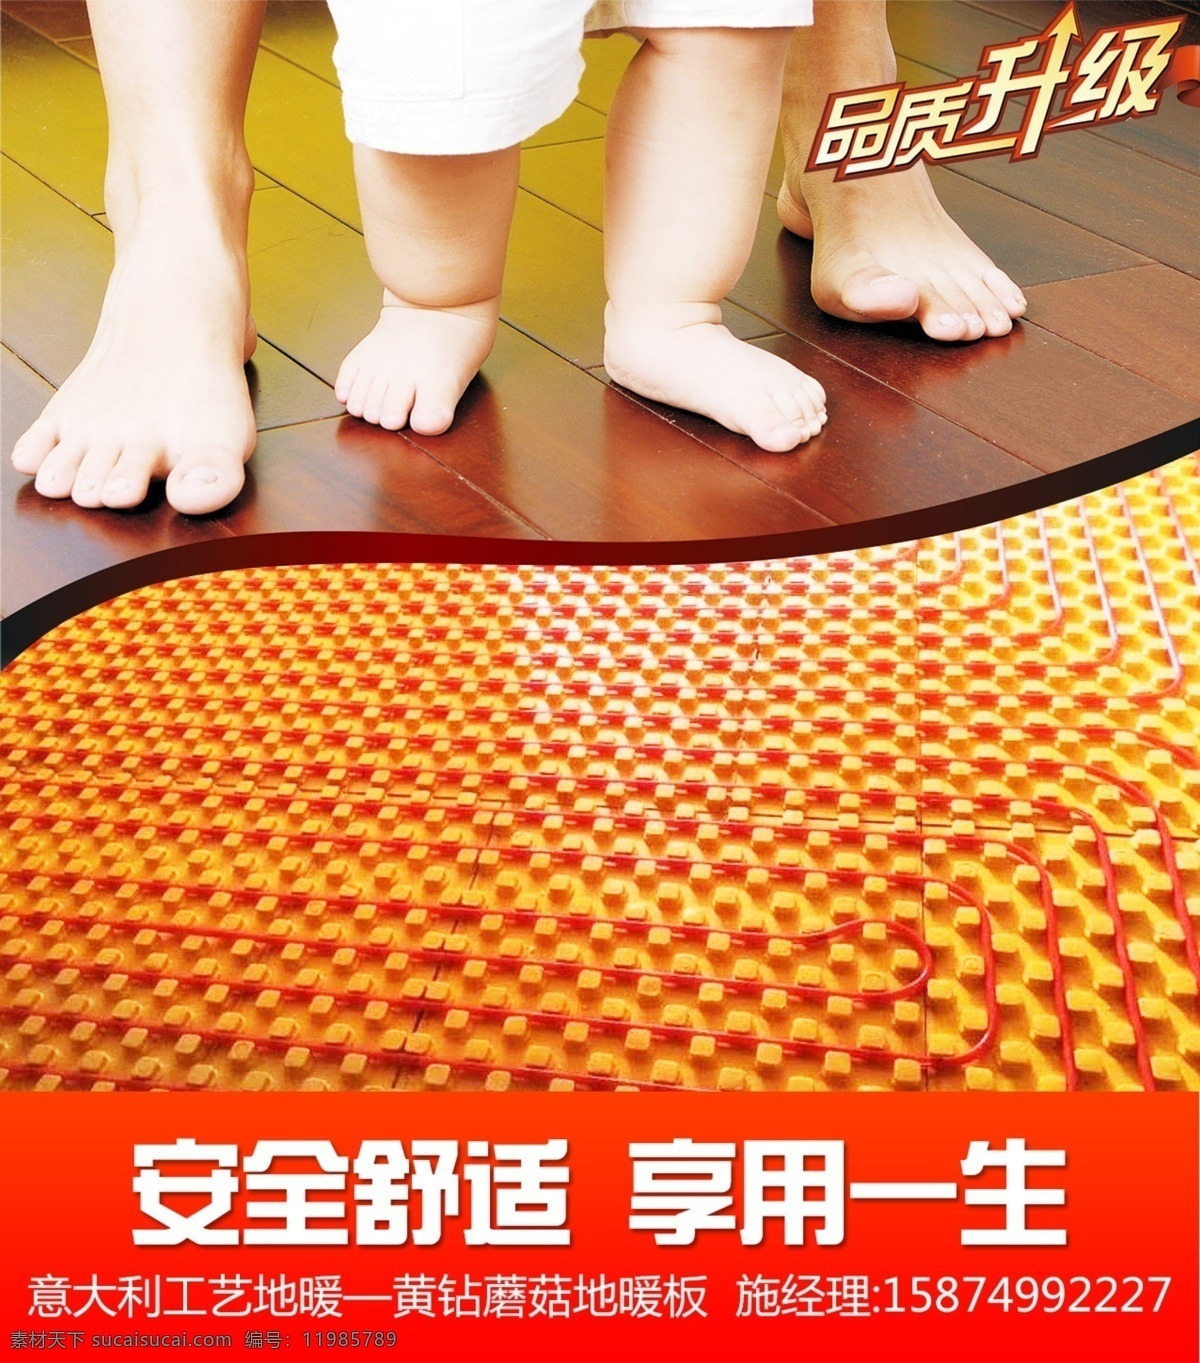 地暖 蘑菇 板 海报 蘑菇板 舒适 蘑菇板设计 脚丫 家庭 品质 模板